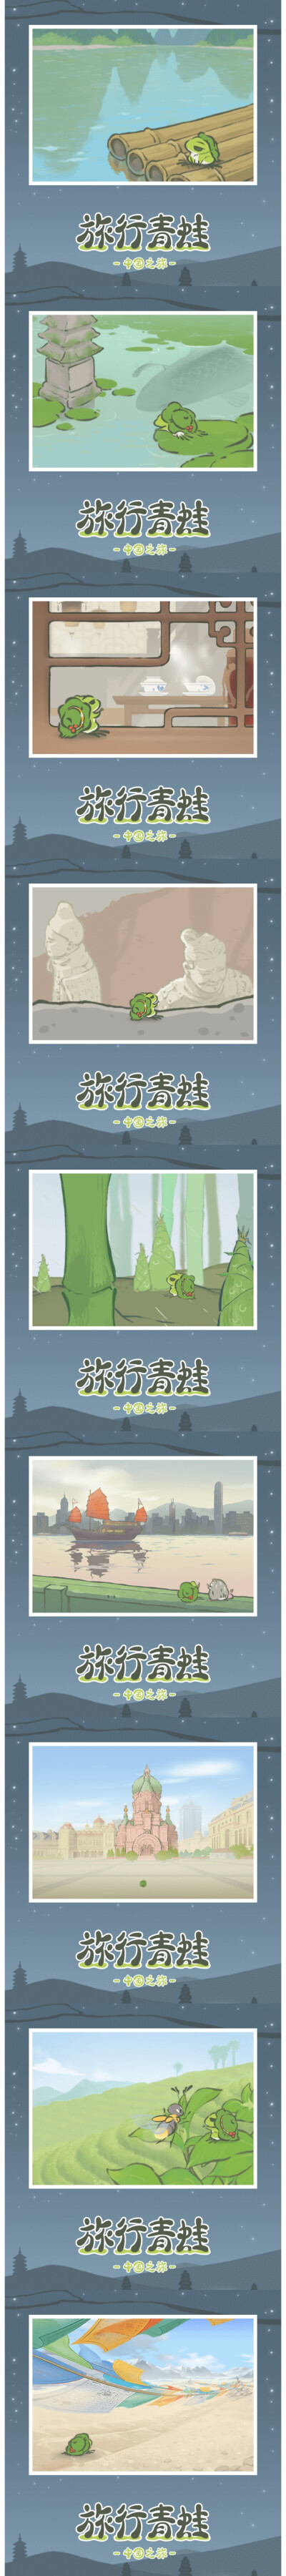 旅行青蛙♡中国版♡明信片